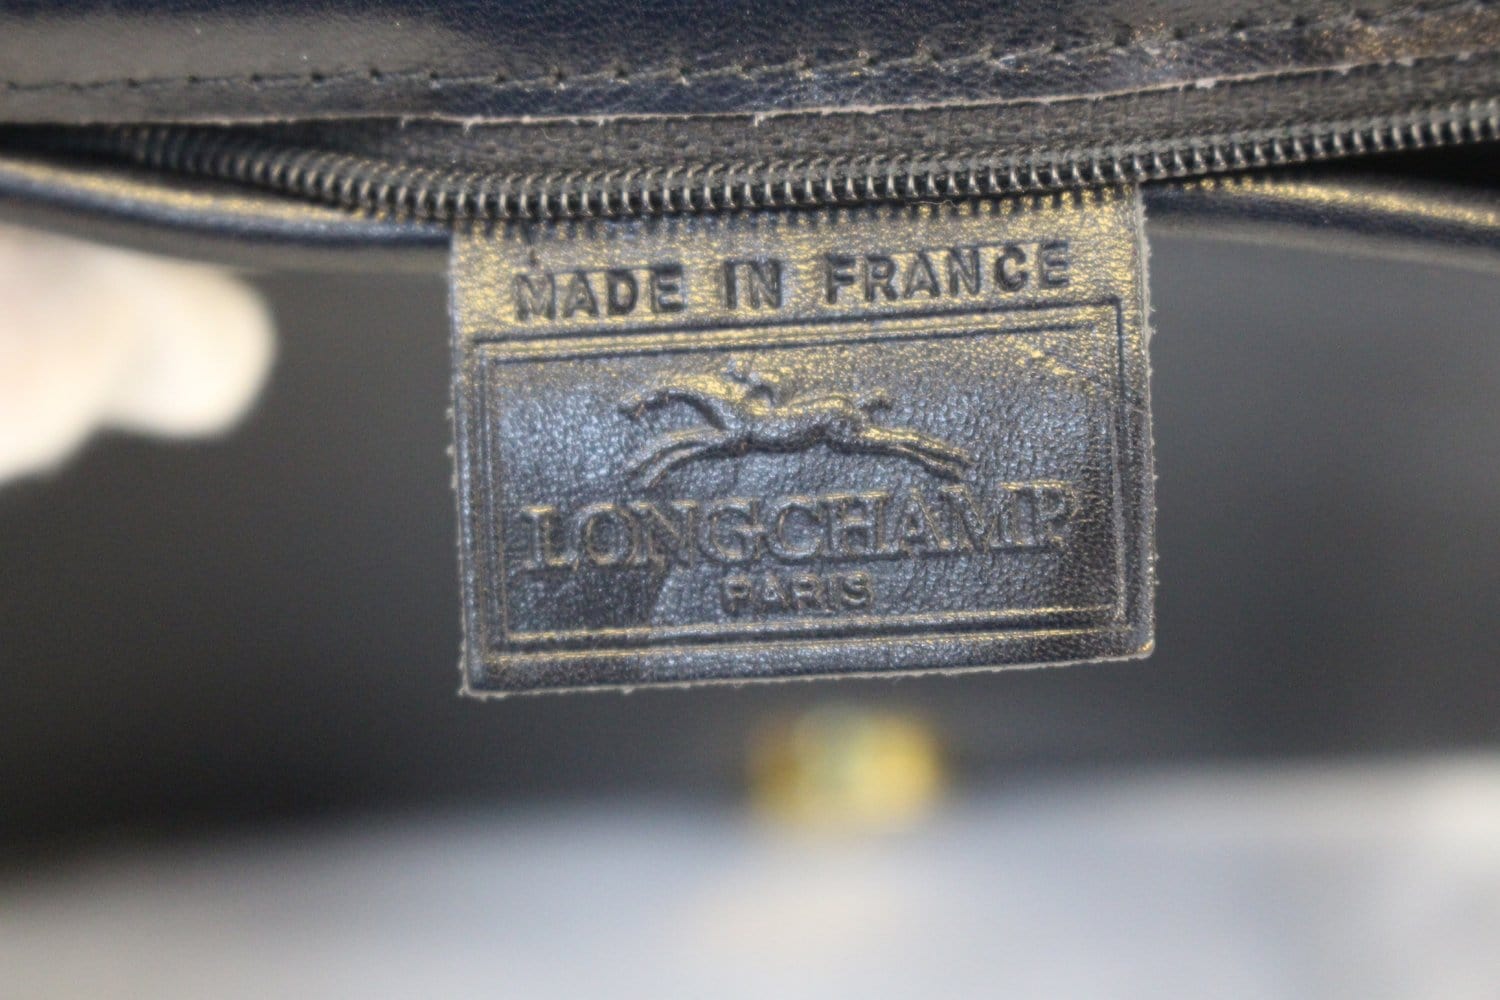 Longchamp, Bags, Vintage Longchamp Leather Shoulder Crossbody Bag Made In  France